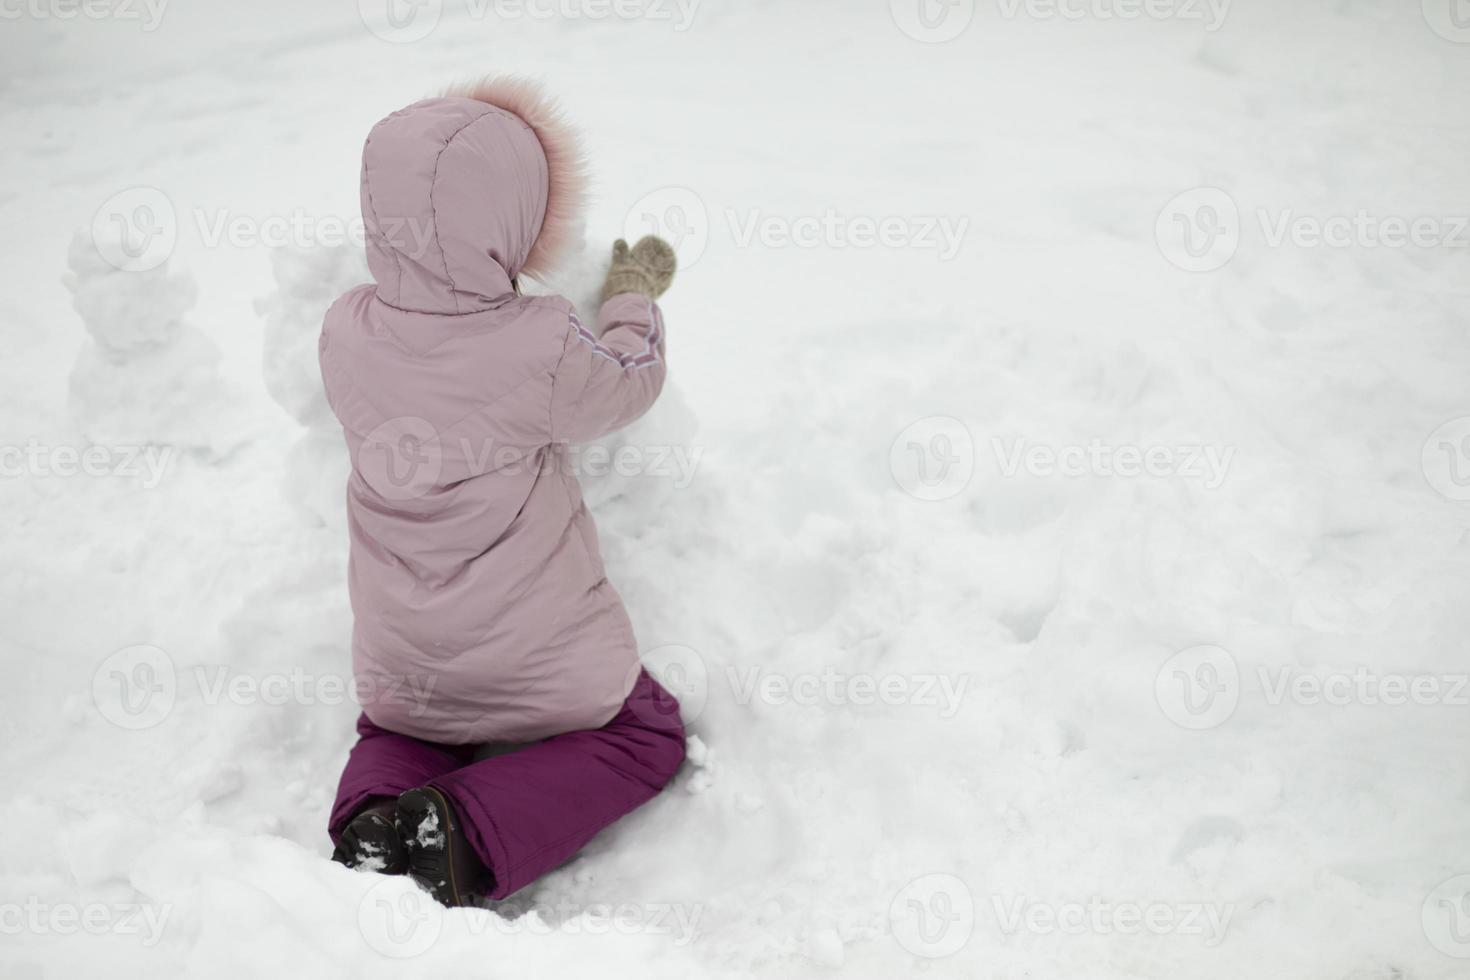 il bambino gioca nella neve. ragazza in inverno. vestiti caldi sul bambino. foto